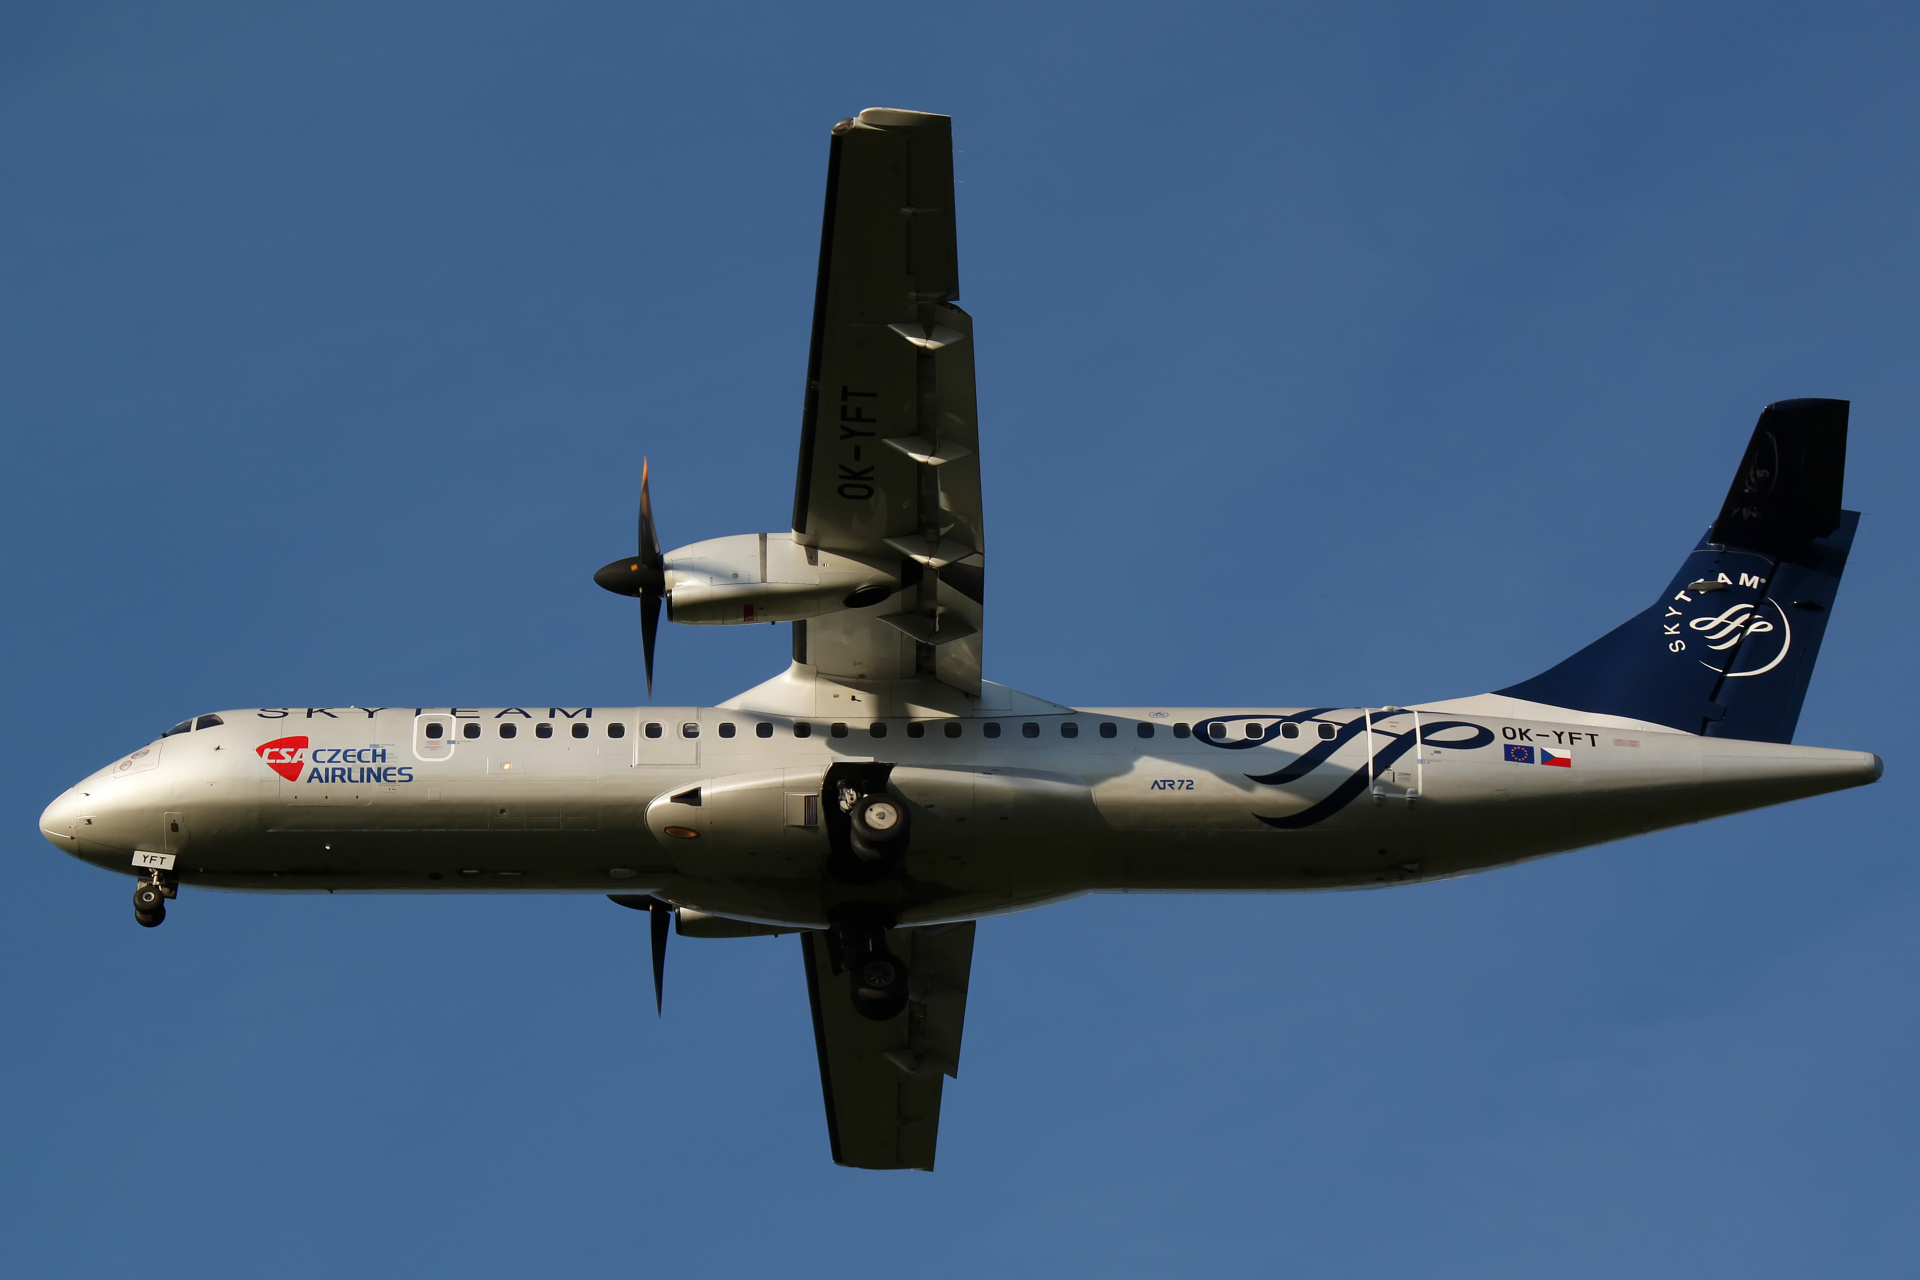 OK-YFT (malowanie SkyTeam) (Samoloty » Spotting na EPWA » ATR 72 » CSA Czech Airlines)